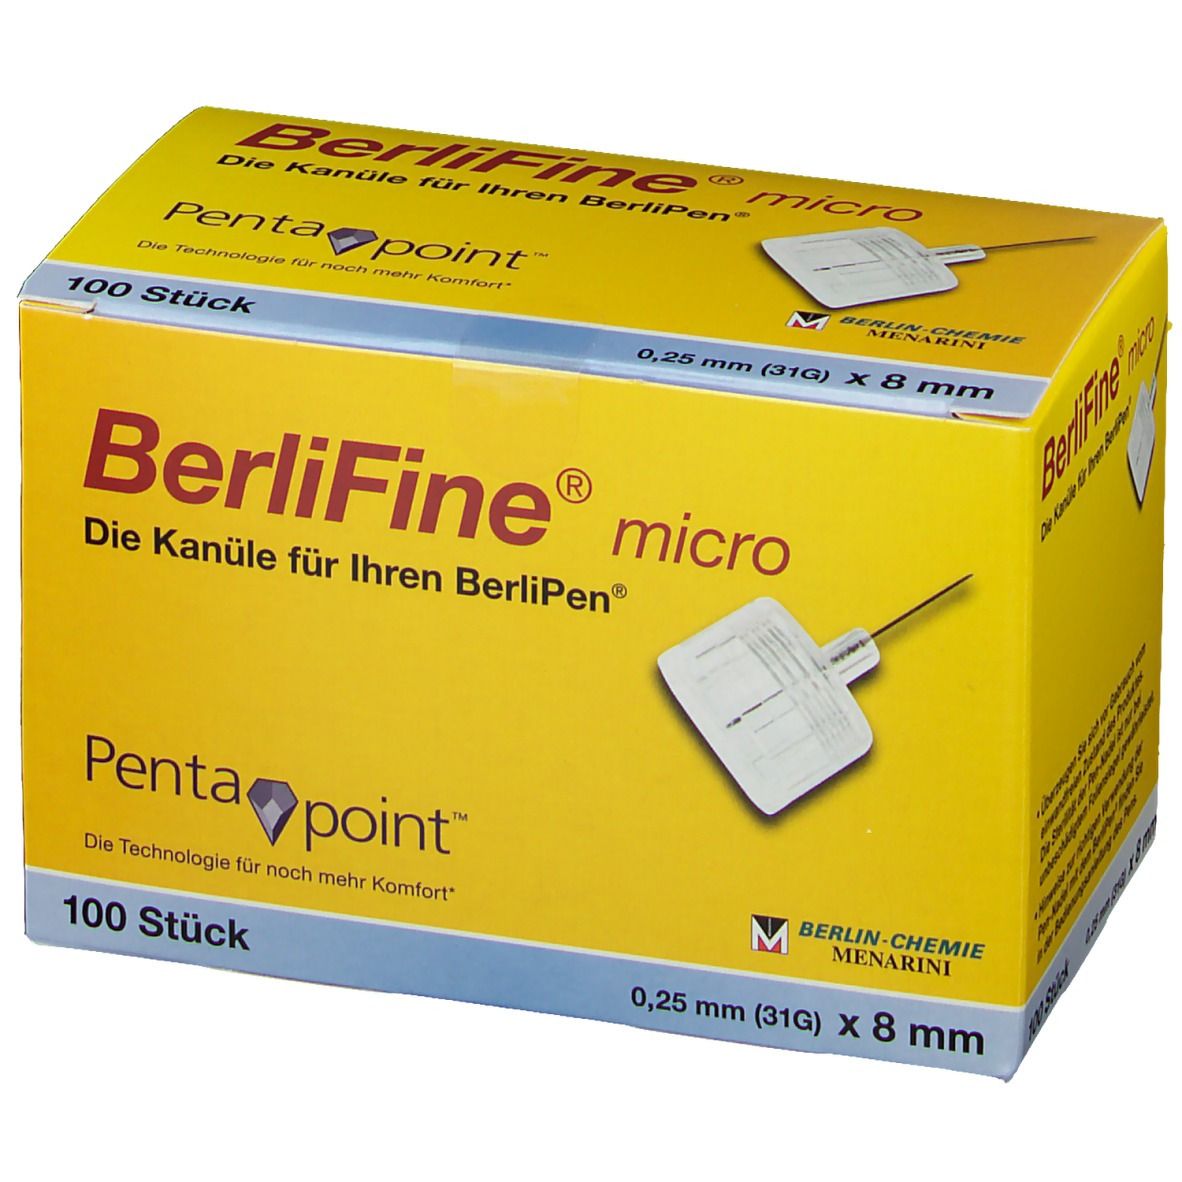 BerliFine® micro Kanülen 0,25 x 8 mm